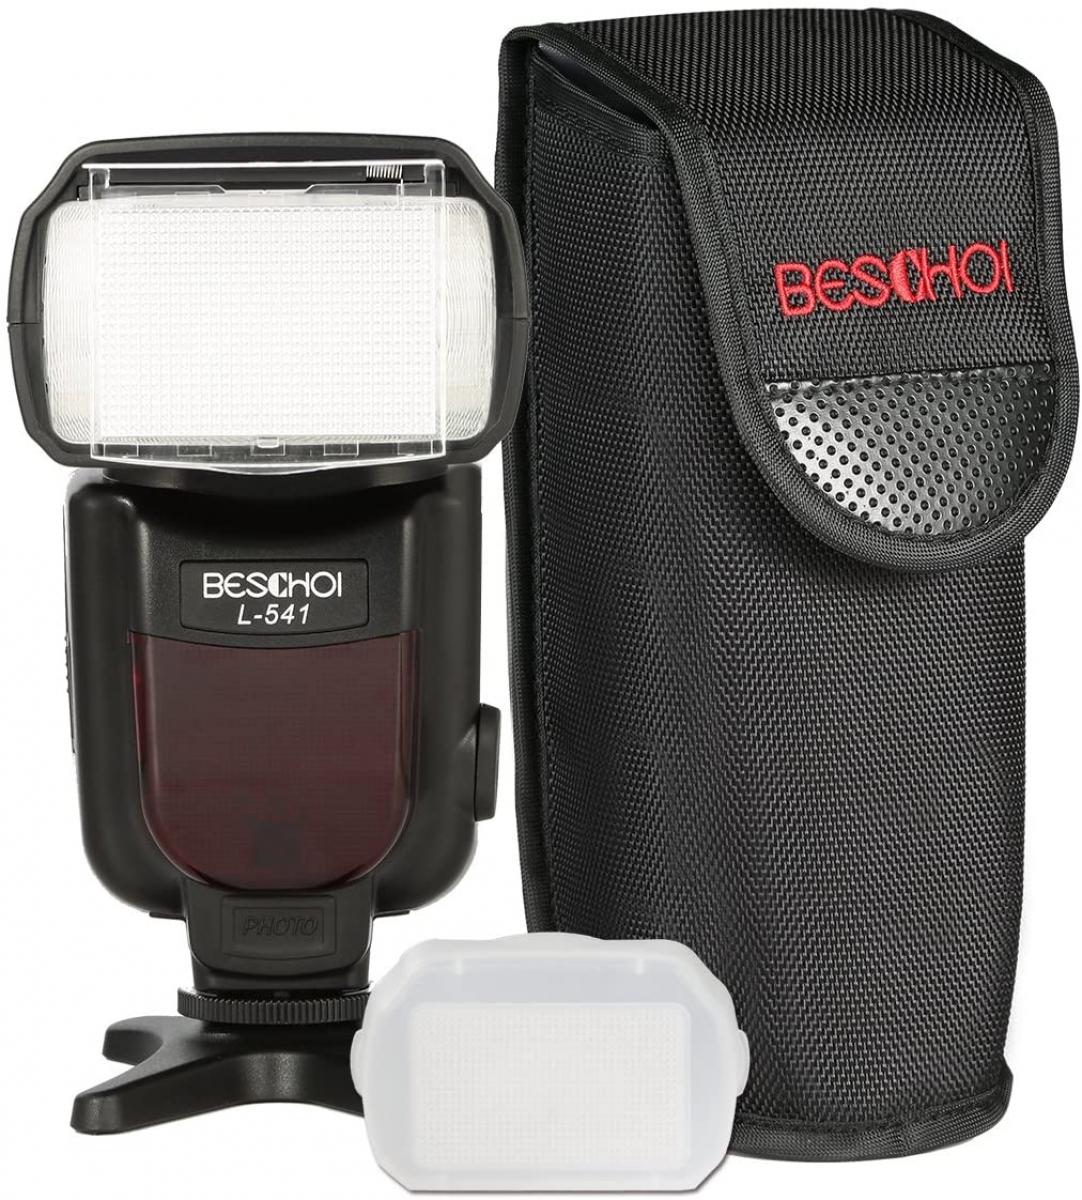 Beschoi L541 Speedlite Flash Universal On-camera Flash